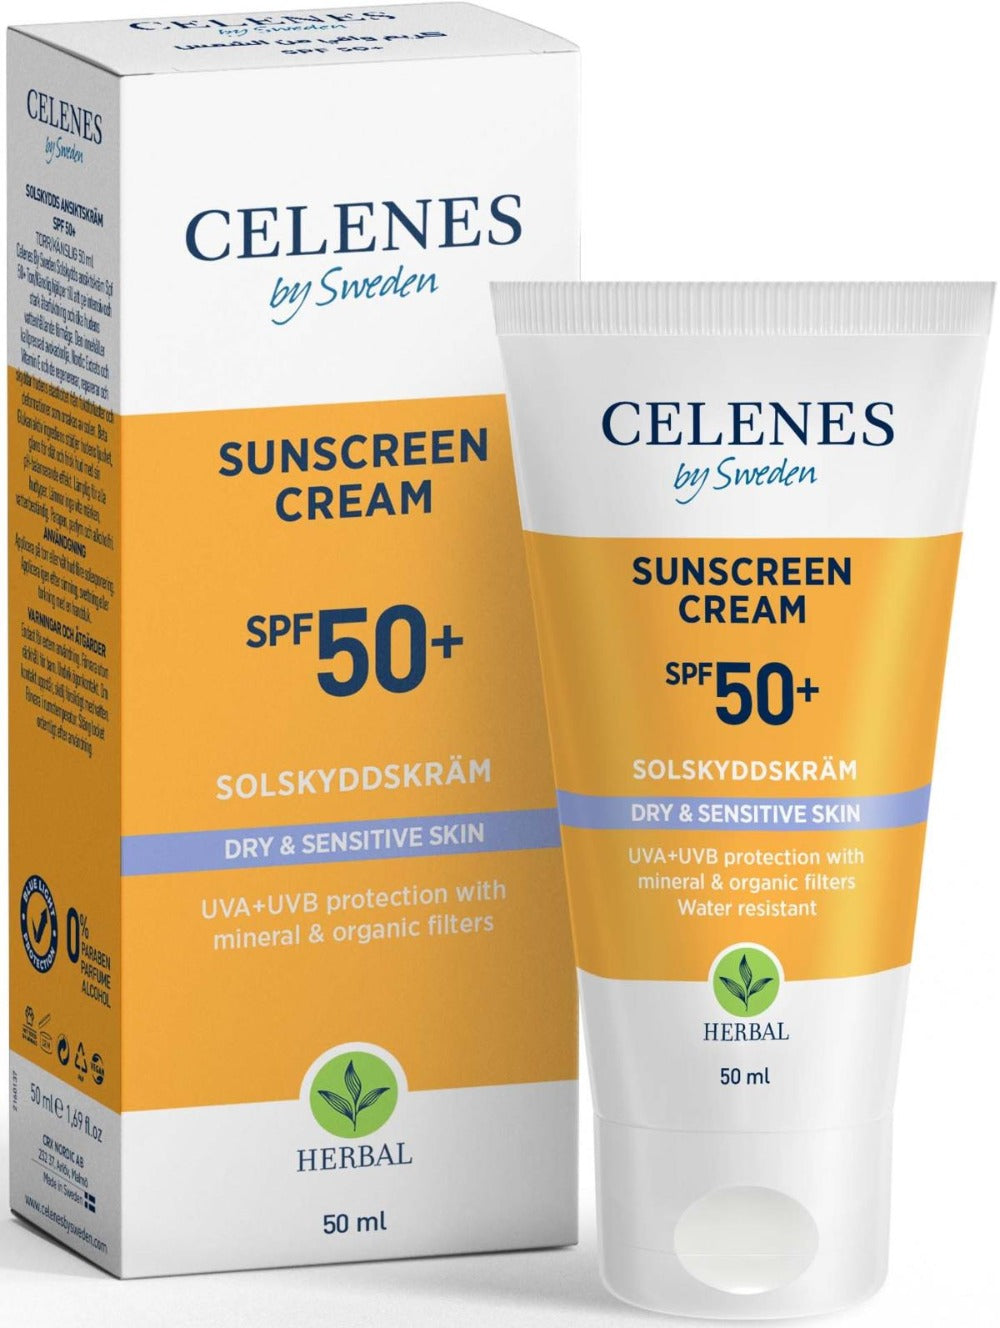 Celenes Herbal Full Protection & Natural Sunscreen Cream Dry & Sensitive SPF 50+ - 50 ml